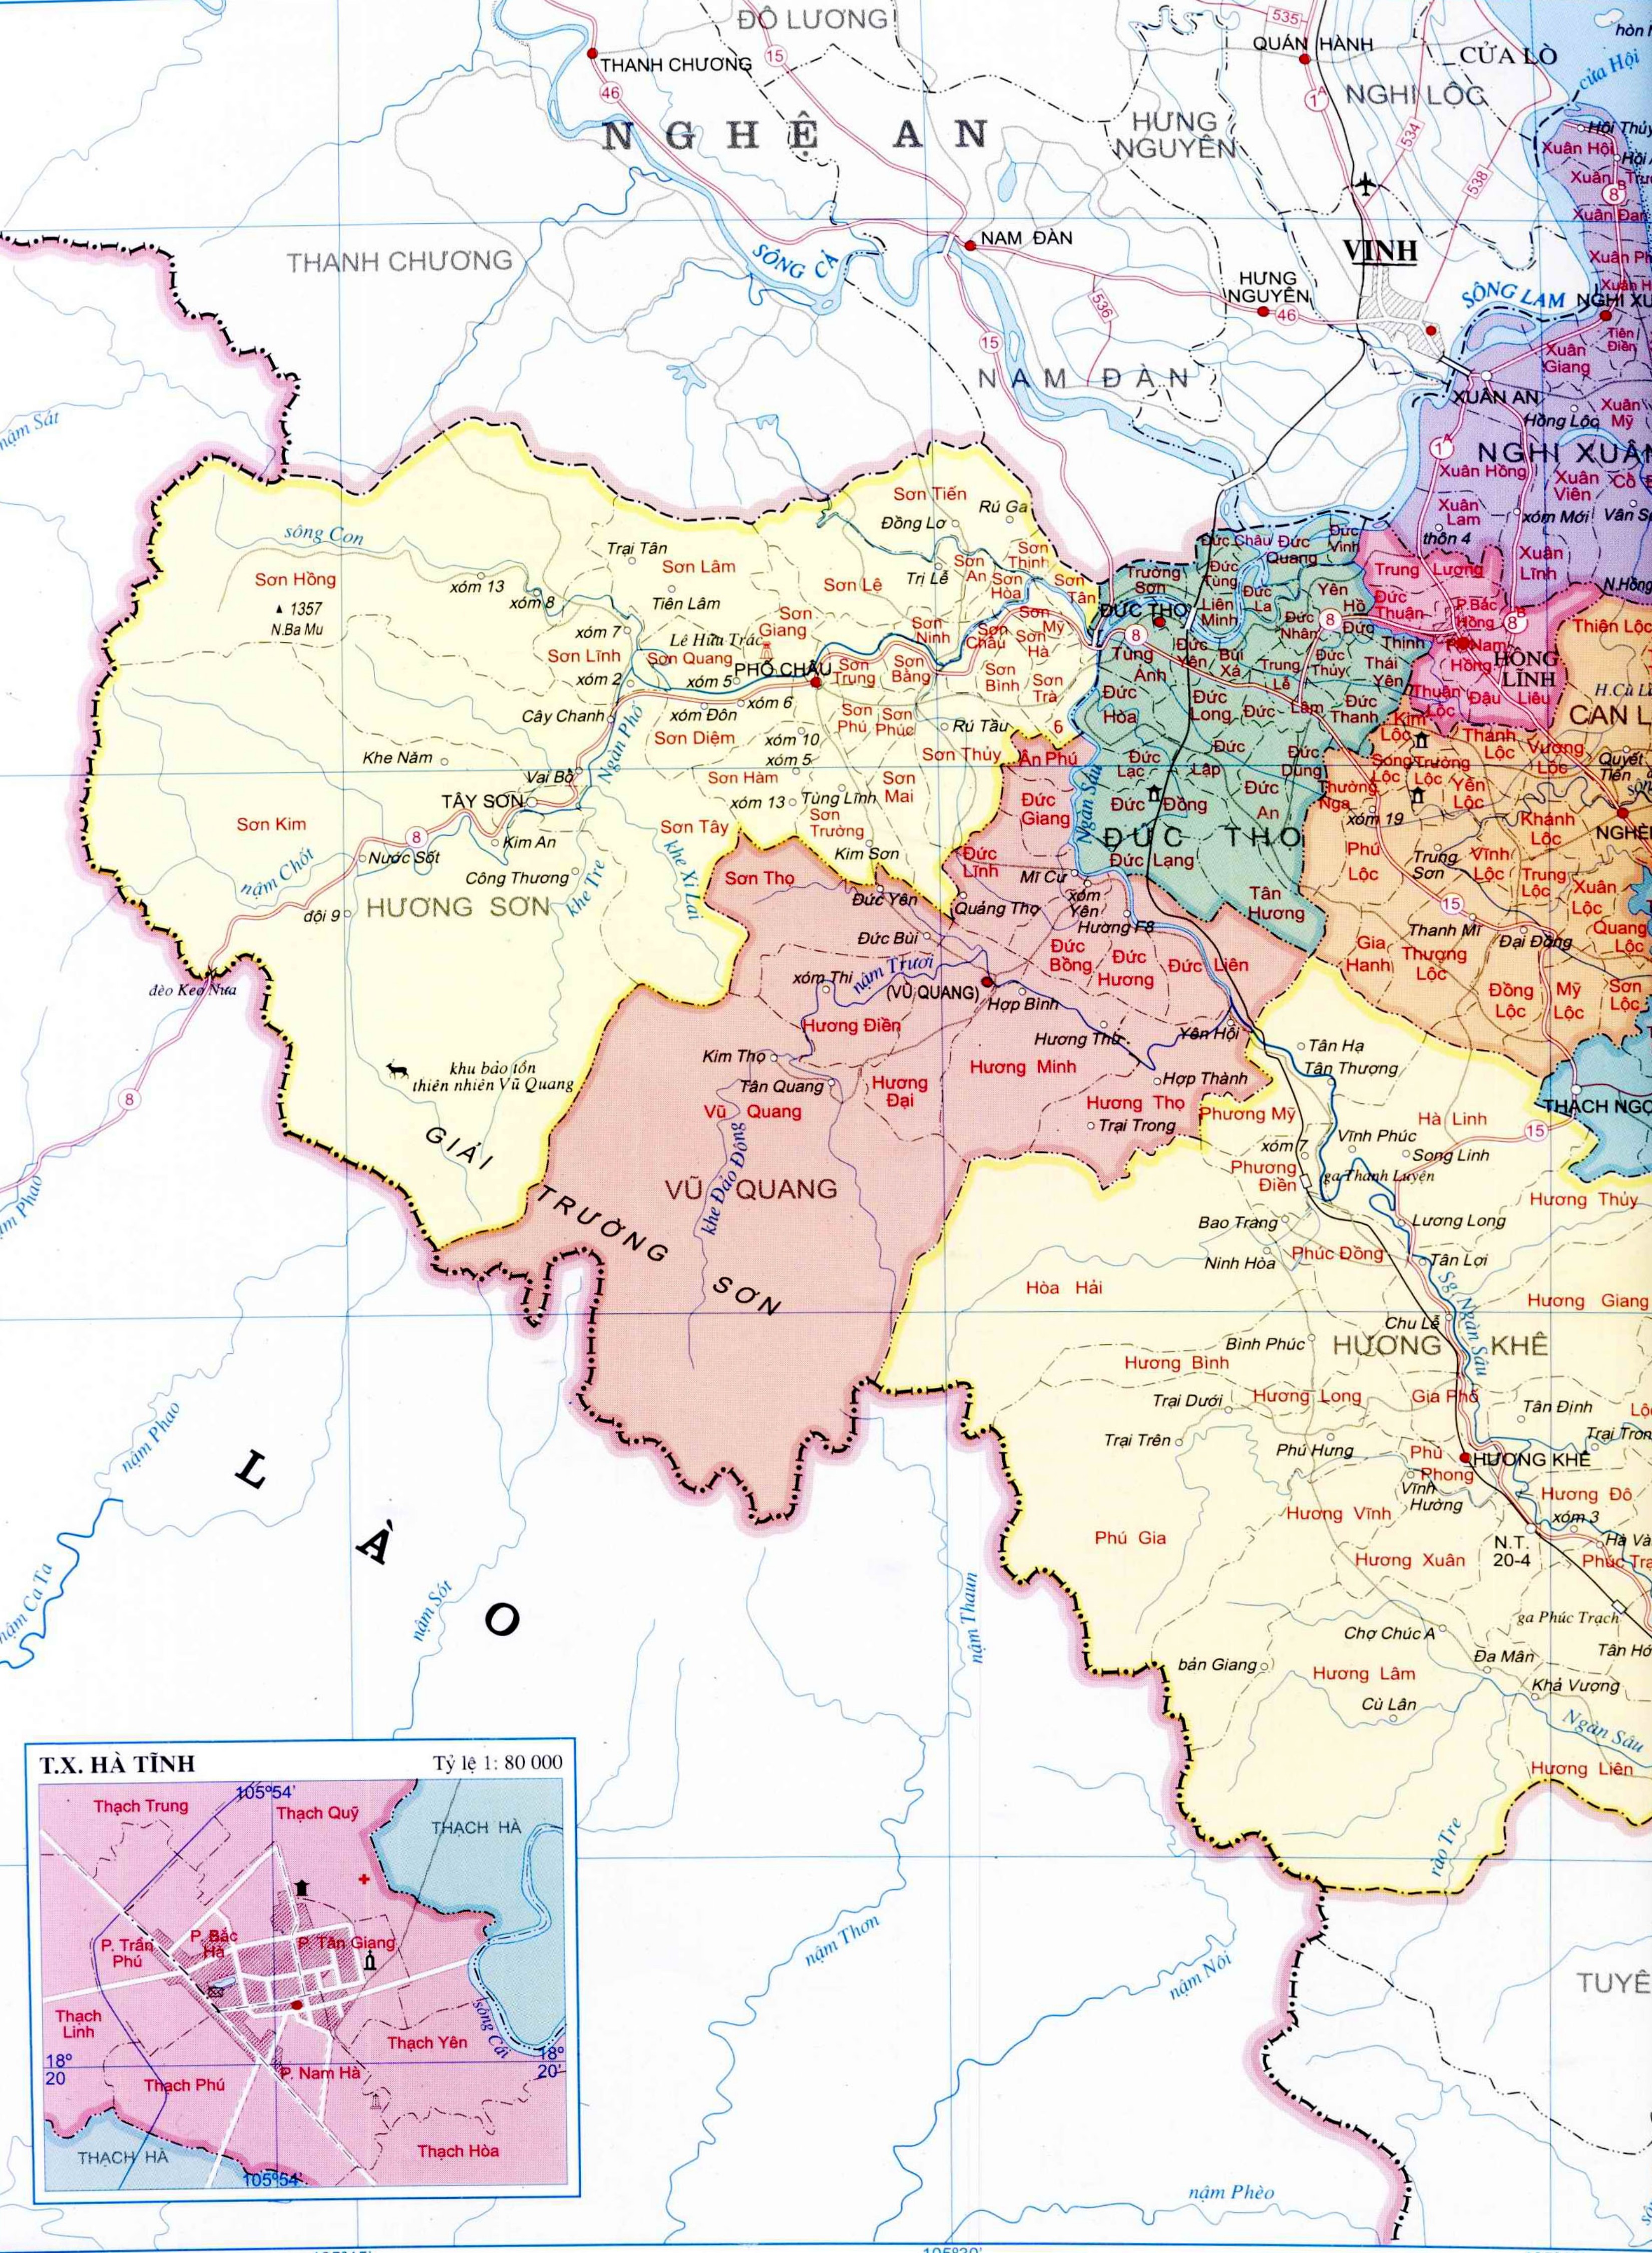 Tìm hiểu về bản đồ hành chính tỉnh Hà Tĩnh - một vùng đất đầy triển vọng với những địa danh và cơ sở hạ tầng đang được phát triển mạnh mẽ. Xem qua các hình ảnh đẹp để hiểu hơn về sự phát triển của tỉnh này trong năm